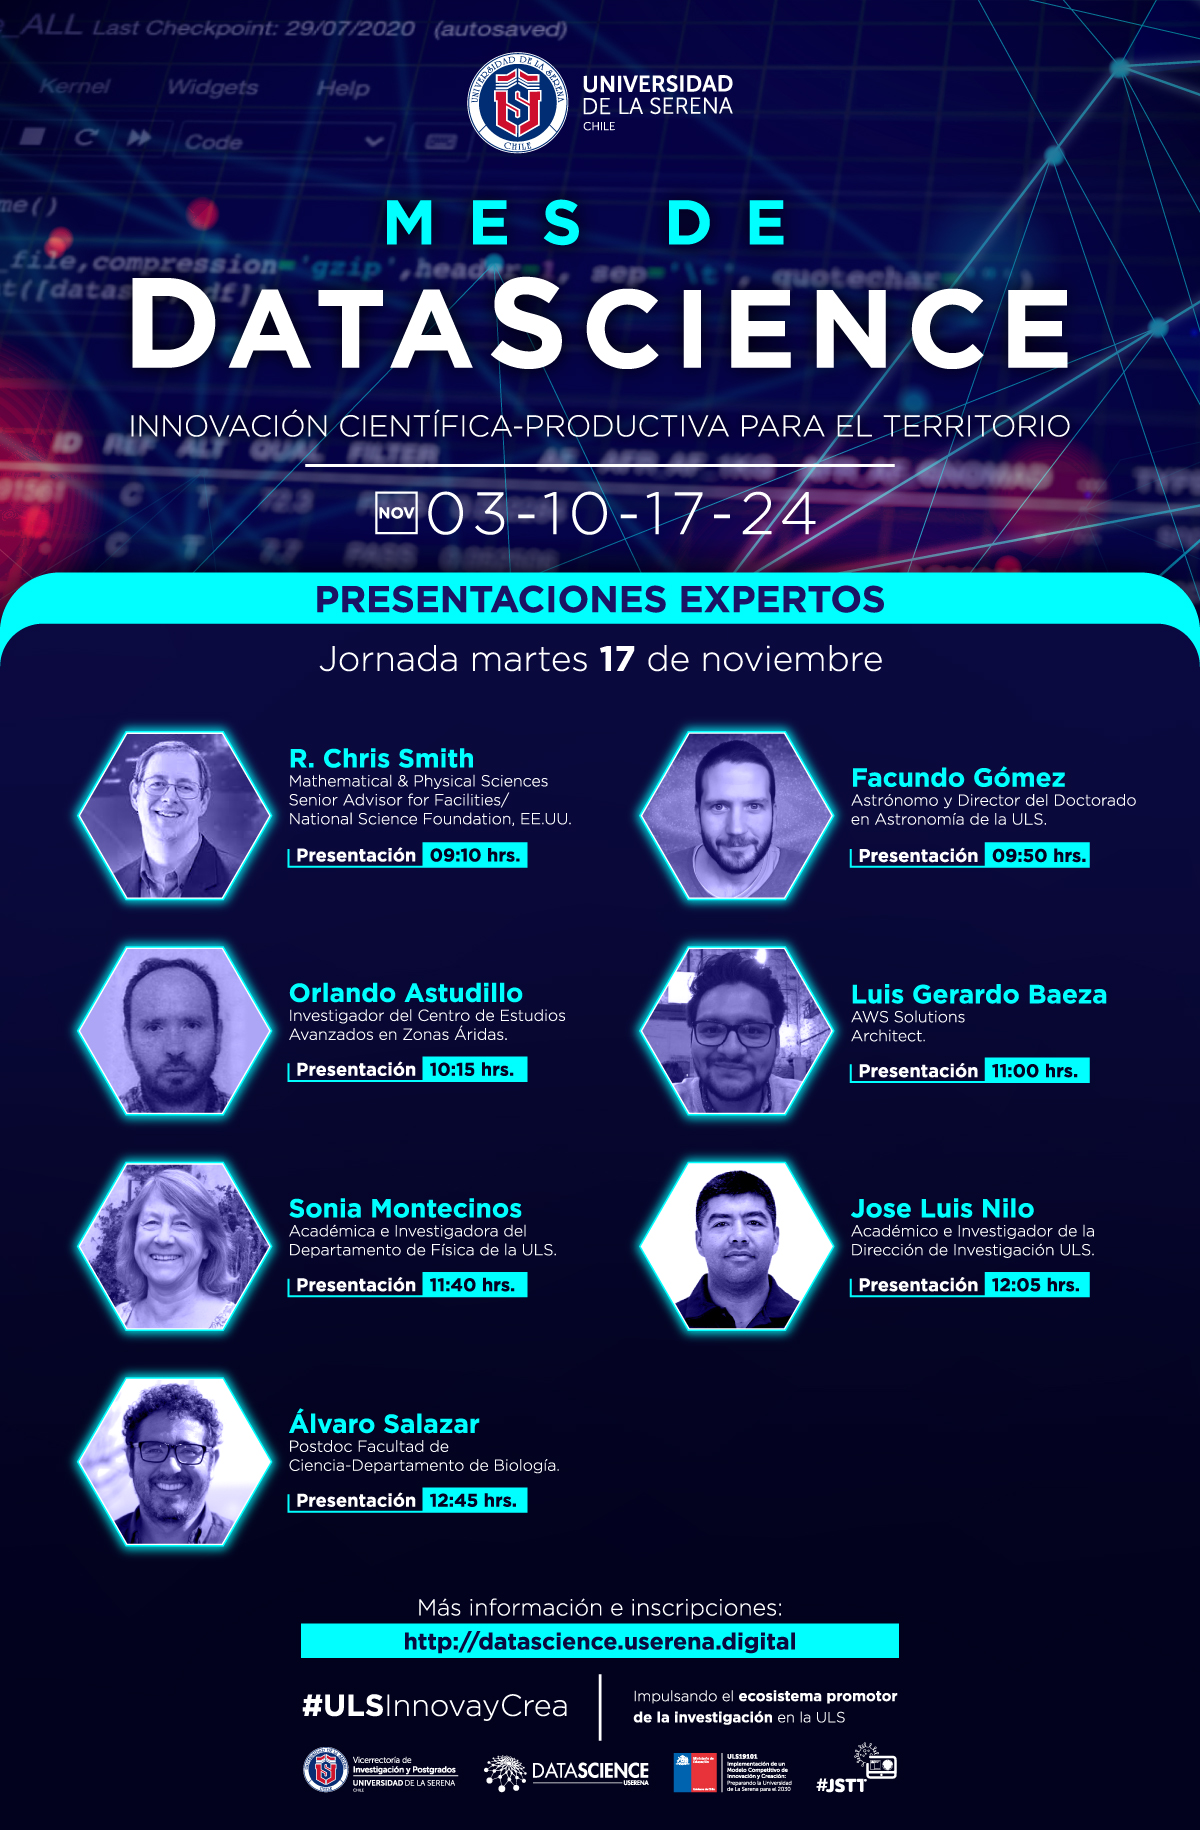 [Martes 17] Tercera jornada del Mes de Data Science: Innovación científico-productiva para el territorio, organizada por la Universidad de La Serena.